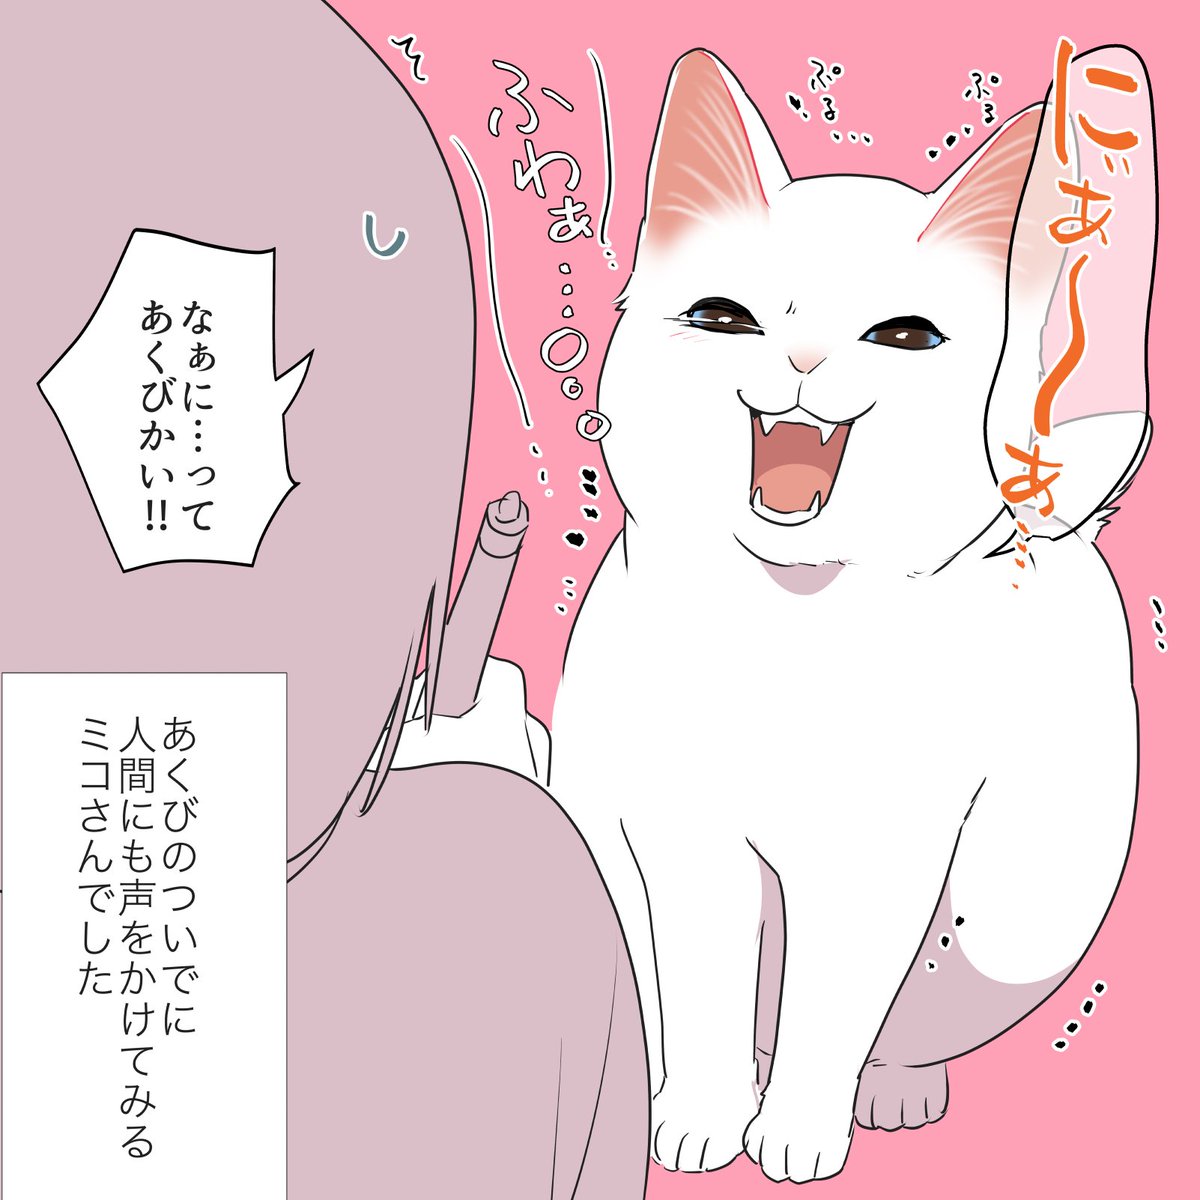 ついででも呼ばれたら嬉しい #漫画が読めるハッシュタグ #愛されたがりの白猫ミコさん